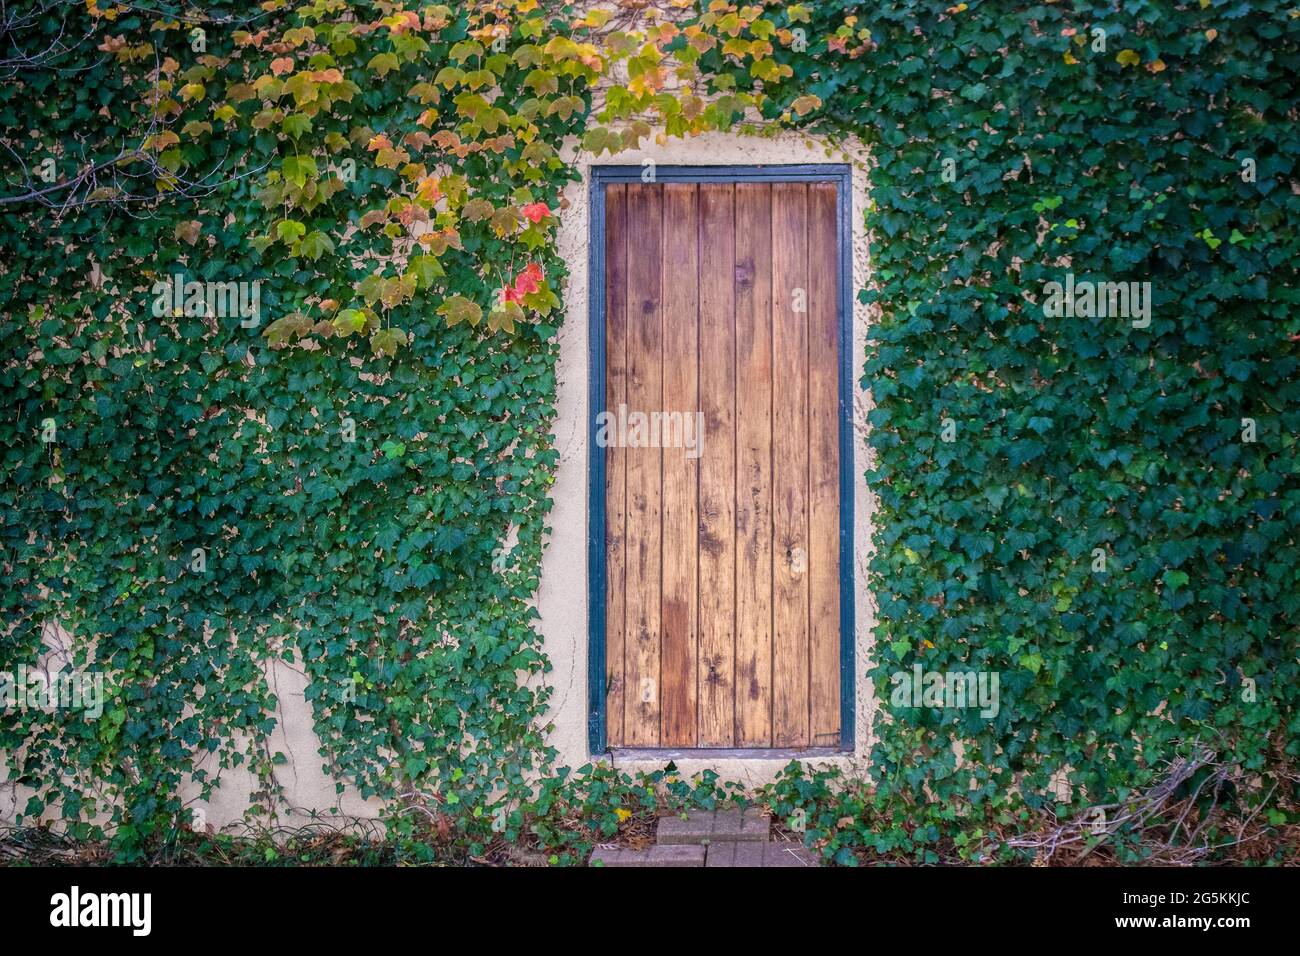 La puerta secreta - puerta rústica de madera sin ventana o pomo o cualquier manera de entrar en la pared de stucco rodeado de coloridas vides otoñales Foto de stock